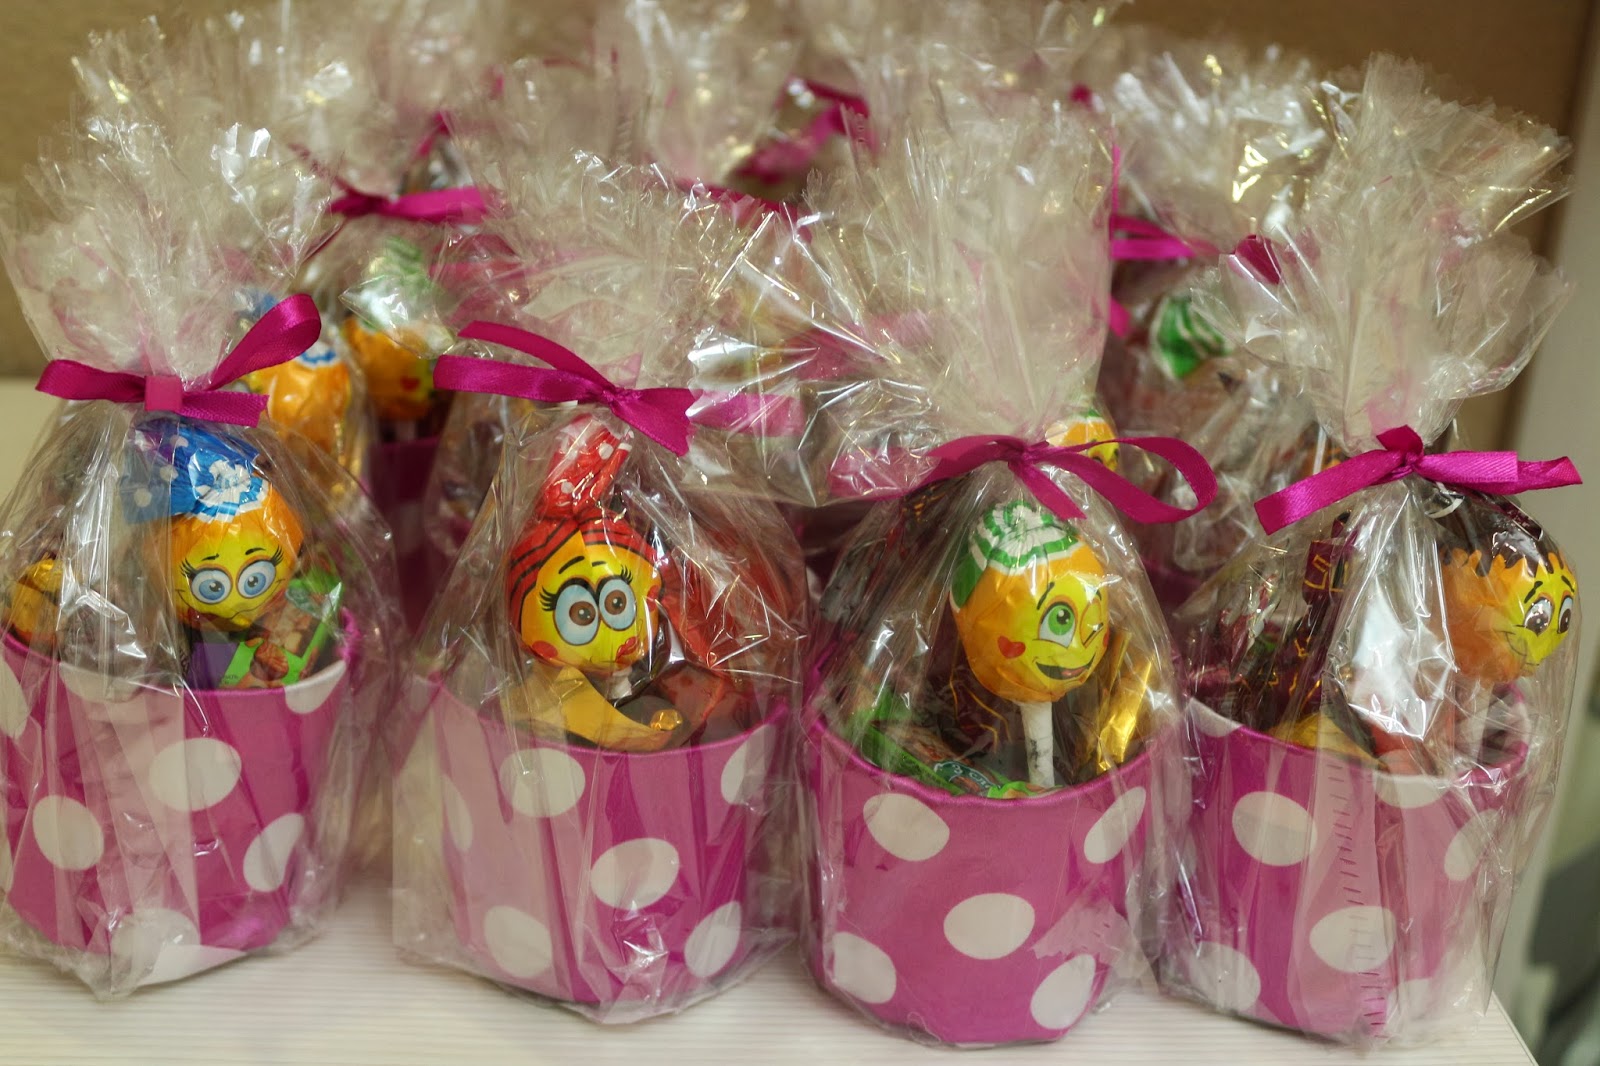 Как слелать сладкие подарки своими руками: свит-дизайн, коробочки со сладостями для детей и взрослых